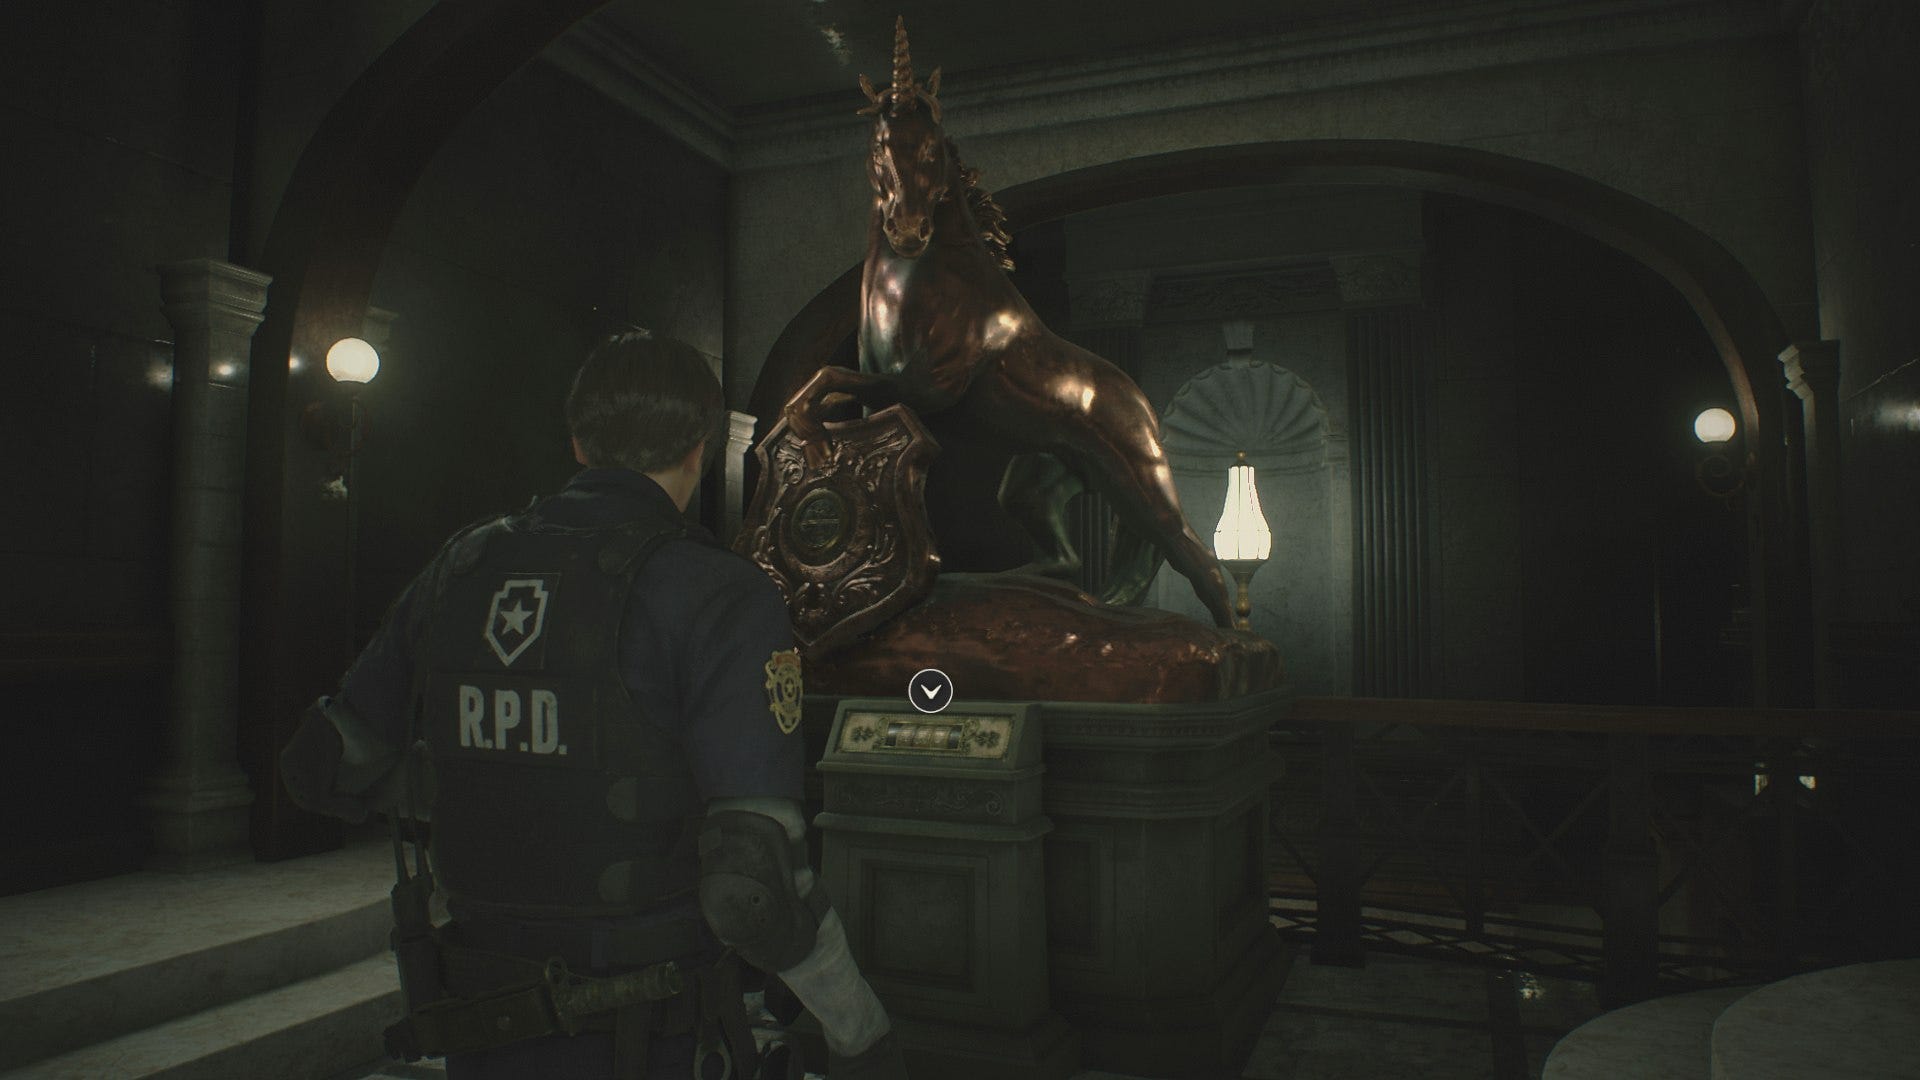 Resident evil 2 единорог. Статуя Льва Resident Evil 2 Remake. Статуя Льва Resident Evil 2 Remake Клер. Резидент ивел 2 ремейк медальоны.